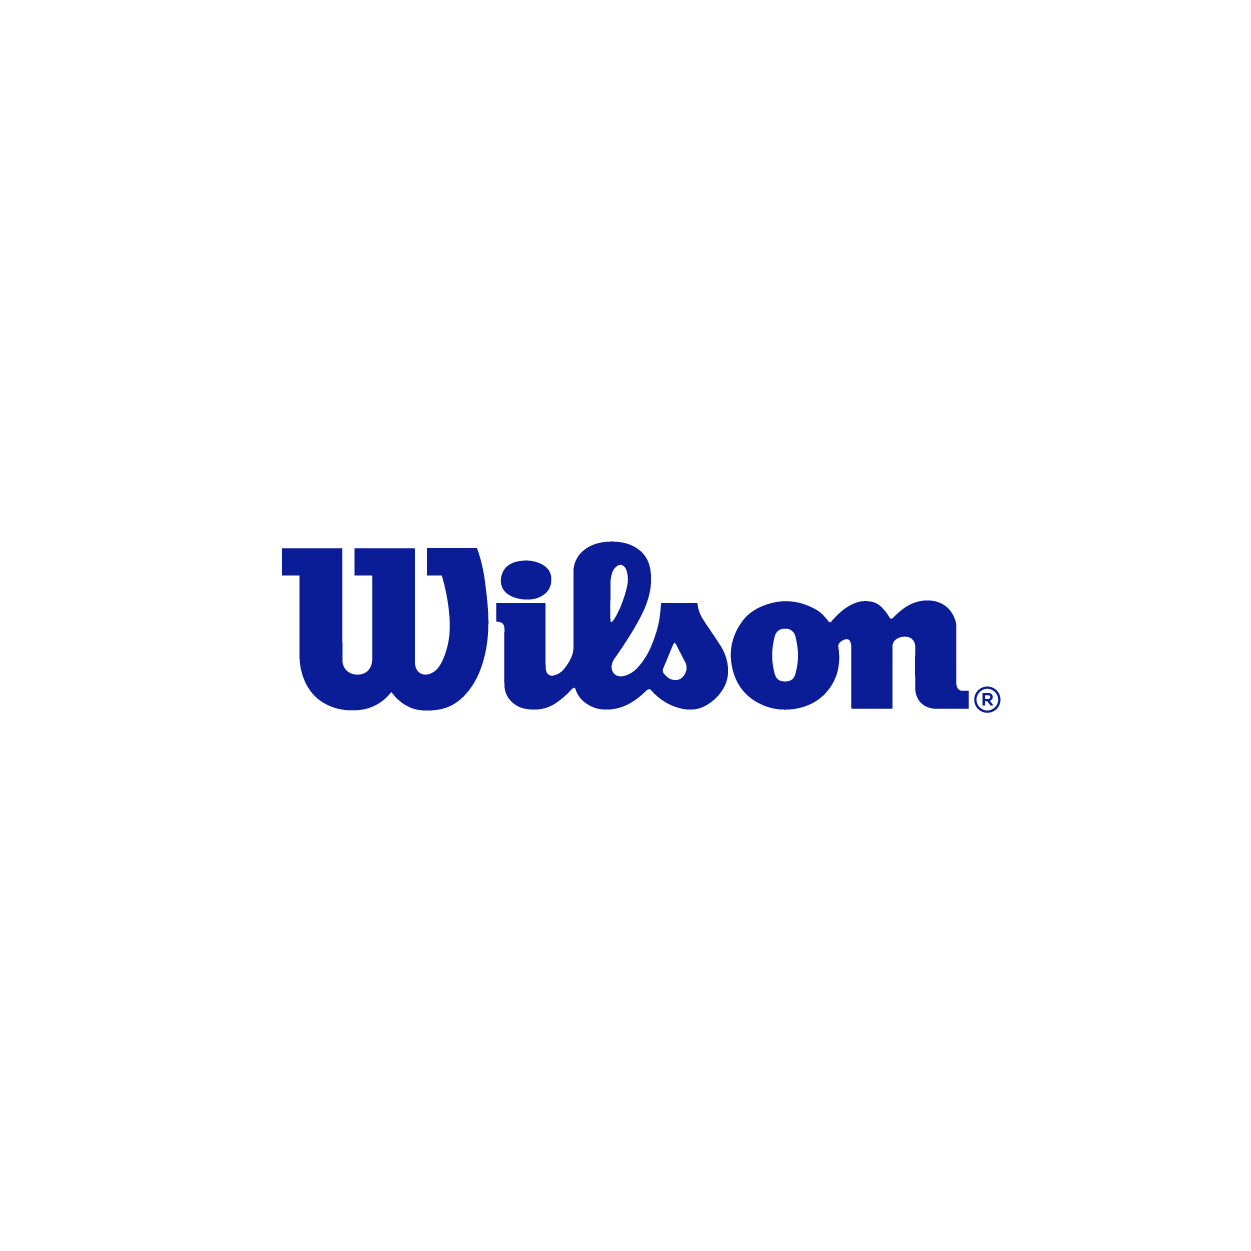 Welldonecie - Welldone - welldone - event - partenaire - sponsors - agence évènementiel - design identité de marque - team building - activation